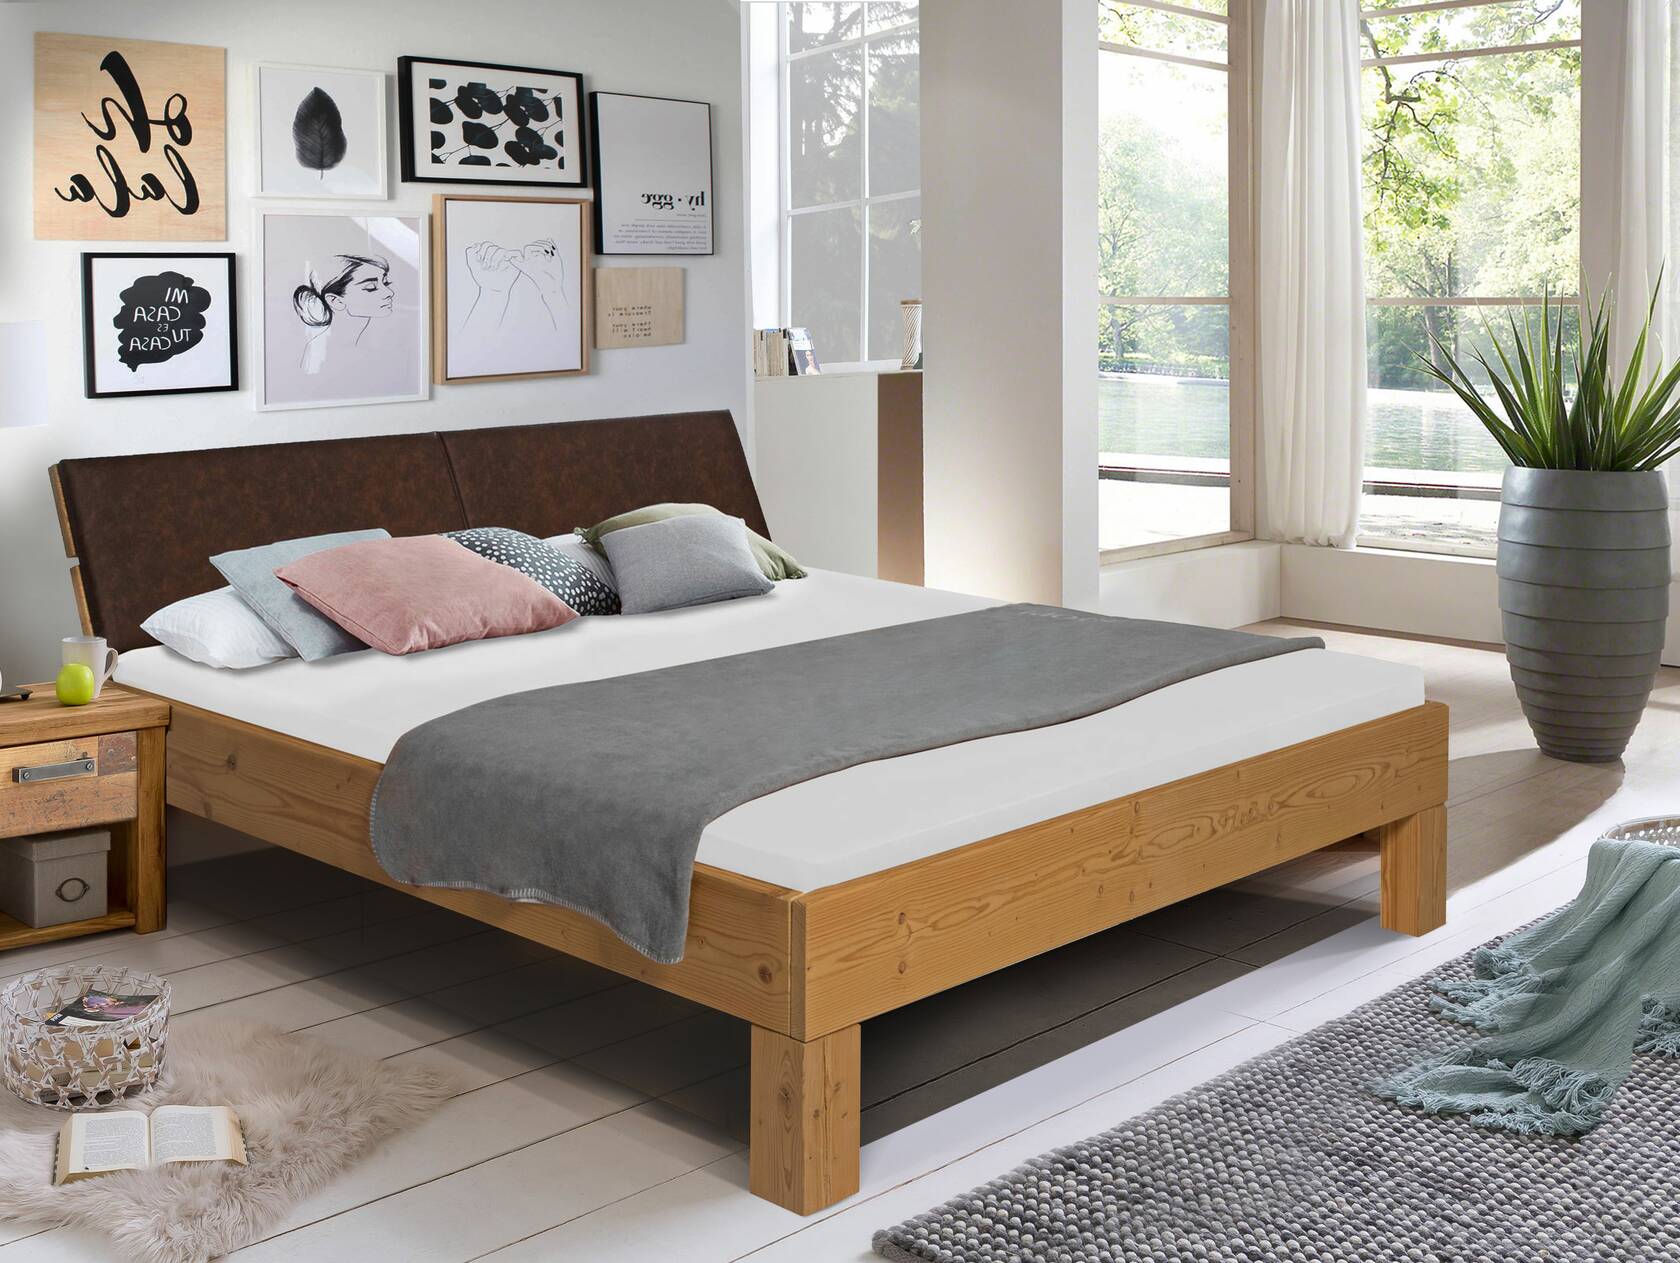 CURBY 4-Fuß-Bett mit Polster-Kopfteil, Material Massivholz